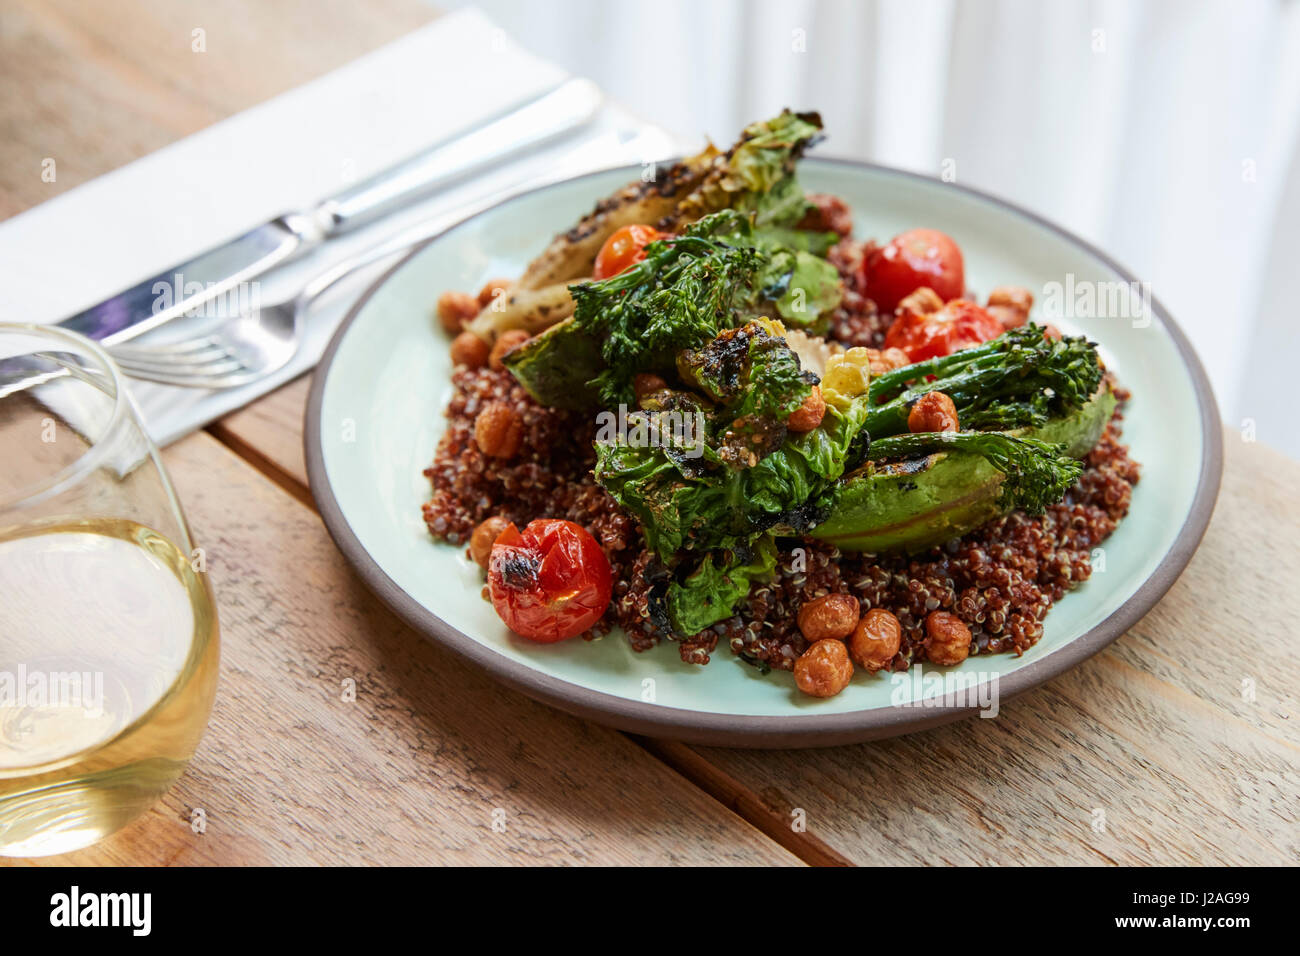 Aguacate, broccolini, garbanzos, ensalada de quinua, niveles elevados de ver Foto de stock